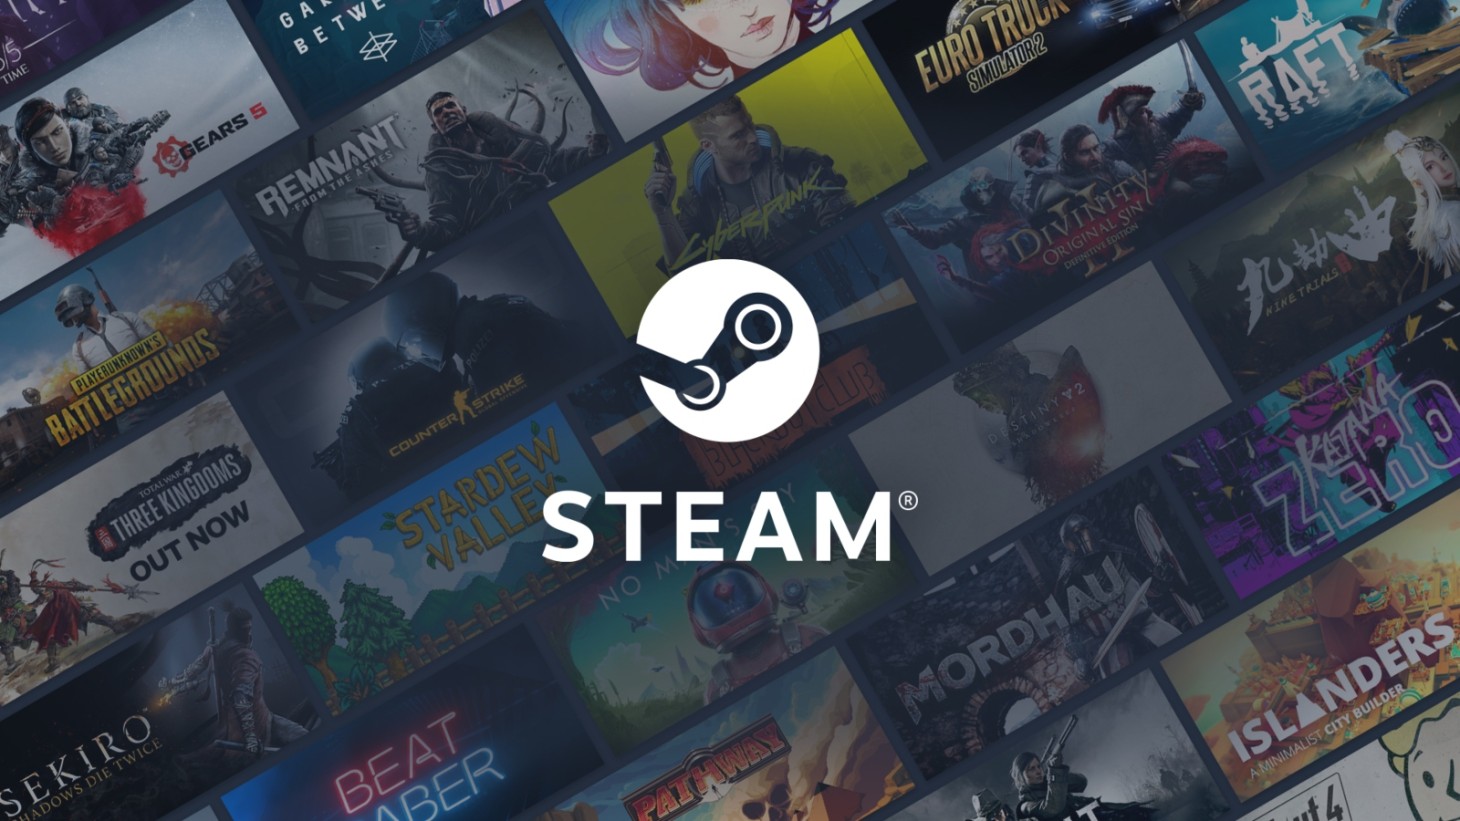 Steam Families announced